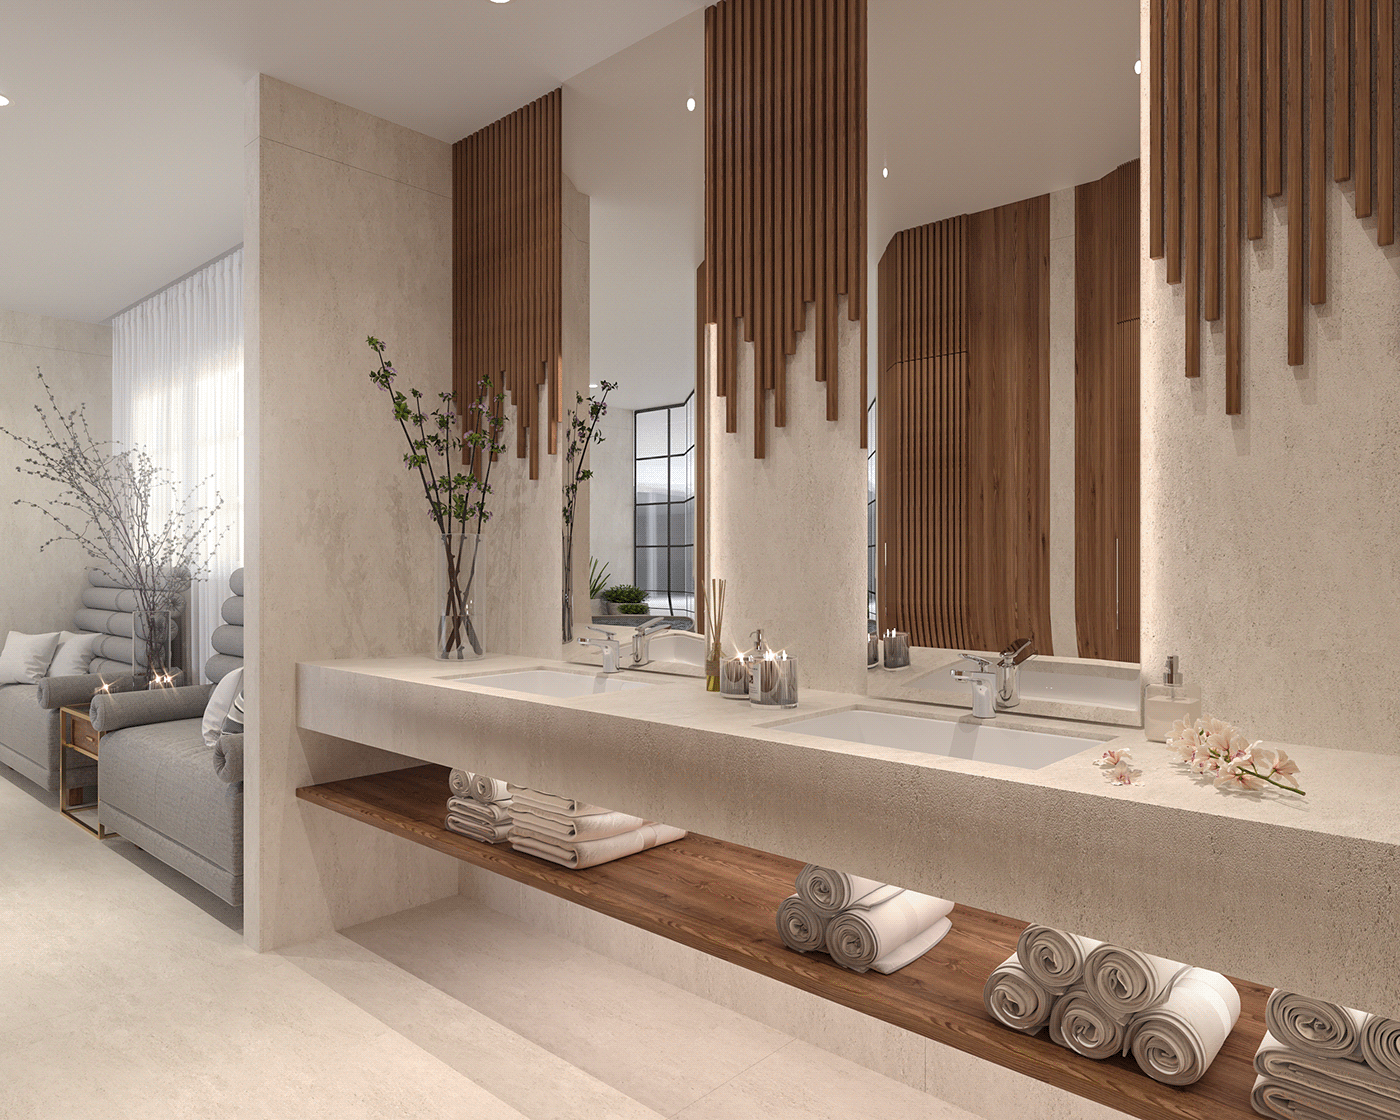 3ds max architecture bathroom design CGI corona elegant bathroom interior design  modern bathroom spa design visualization